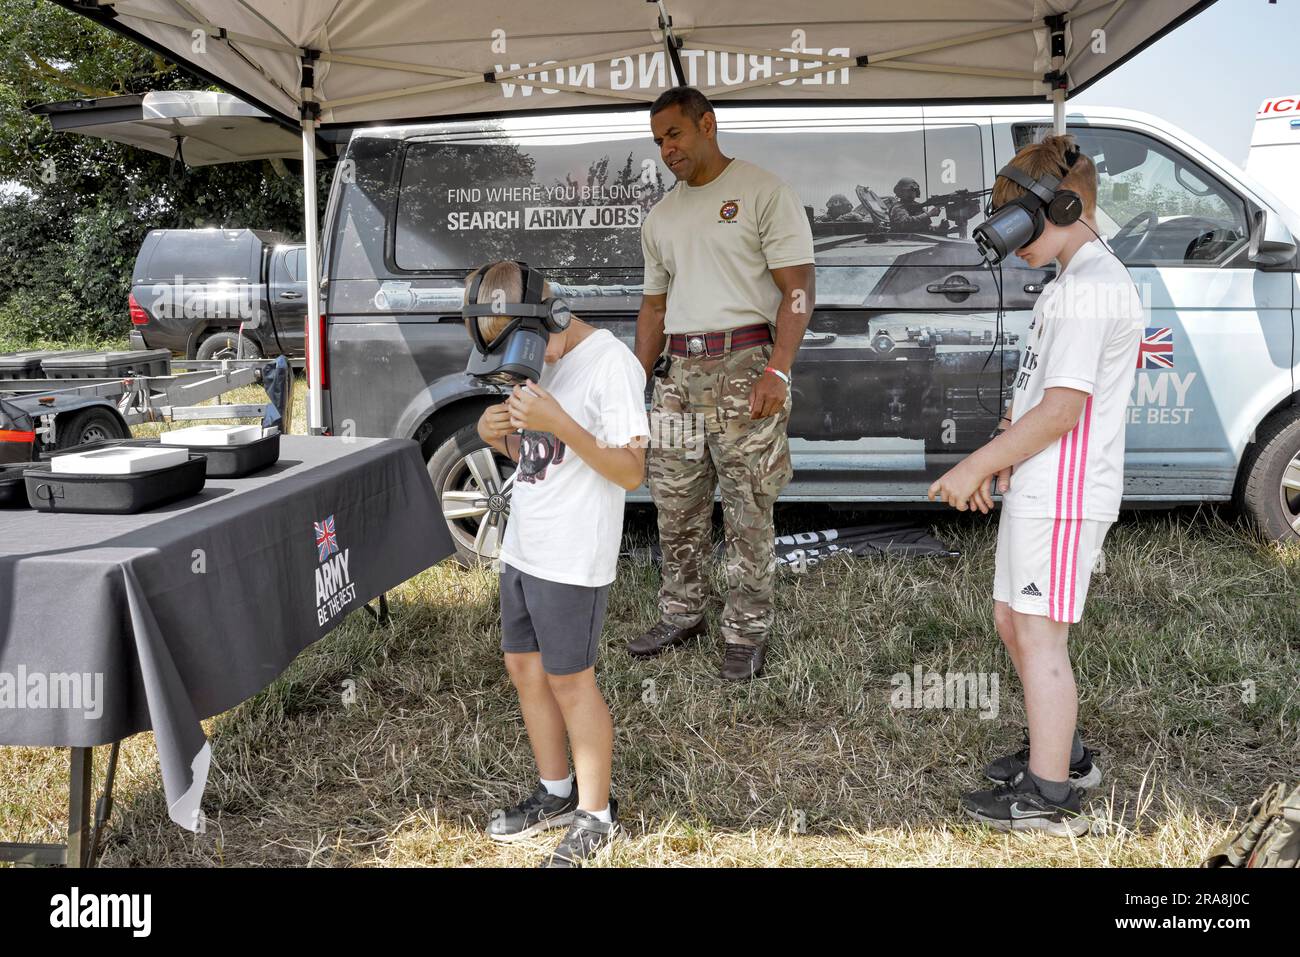 Dimostrazione di realtà virtuale dell'esercito britannico con bambini che partecipano e indossano visore VR Inghilterra Regno Unito Foto Stock